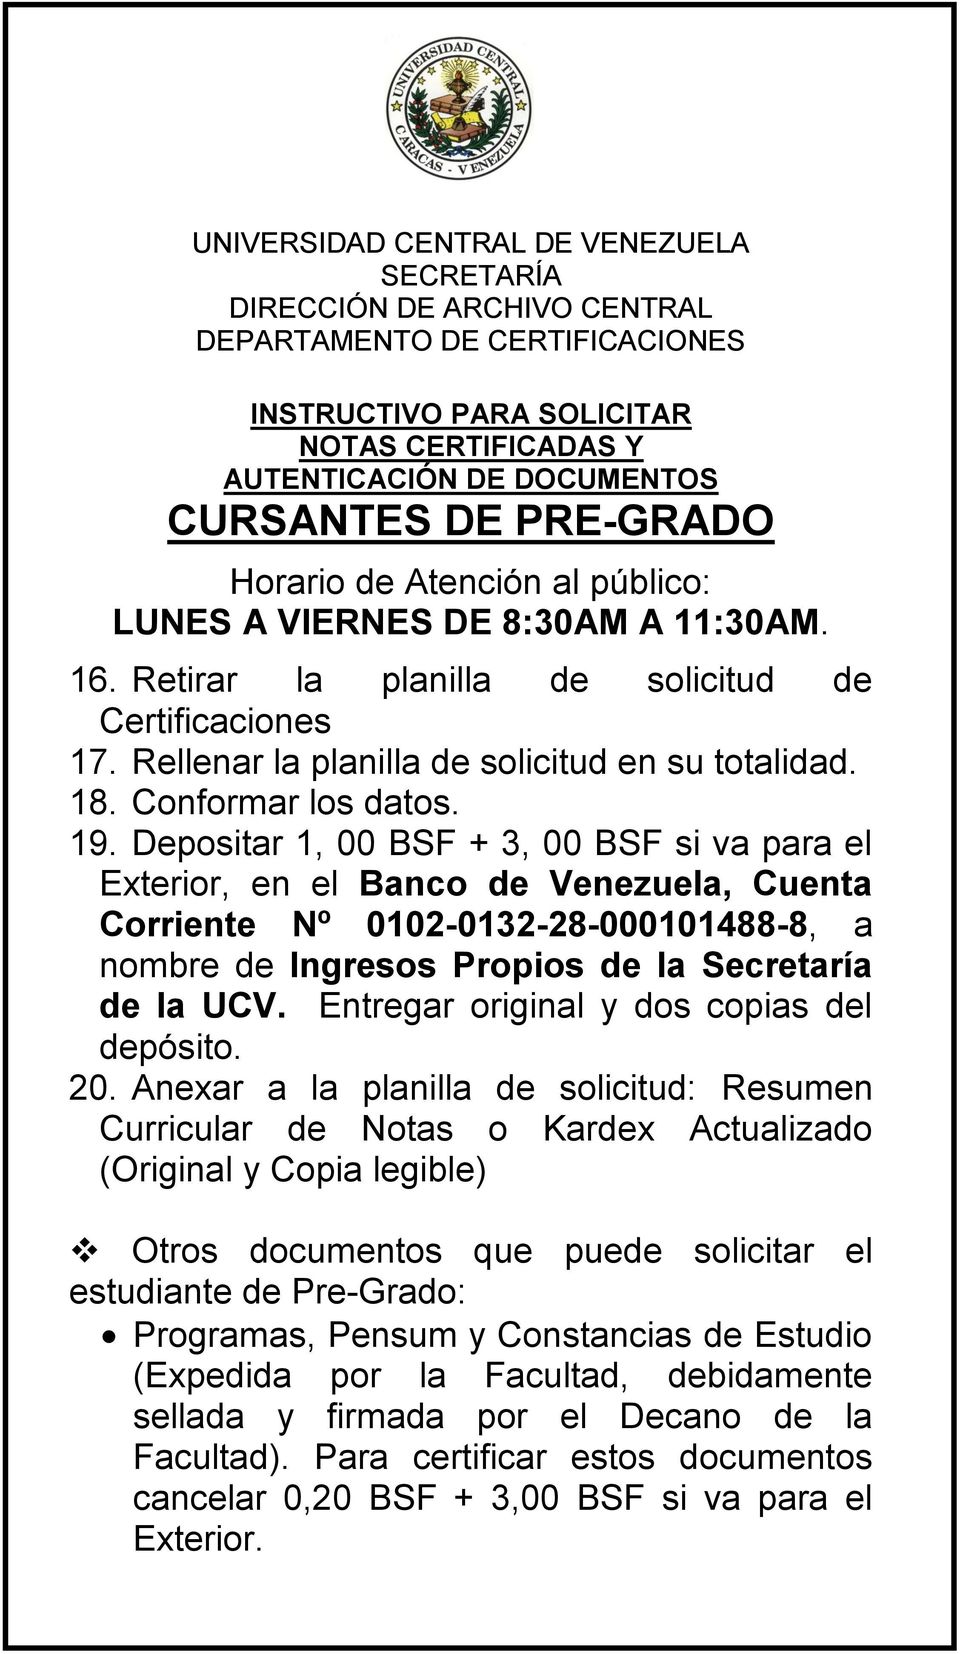 Depositar 1, 00 BSF + 3, 00 BSF si va para el Exterior, en el Banco de Venezuela, Cuenta Corriente Nº 0102-0132-28-000101488-8, a nombre de Ingresos Propios de la Secretaría de la UCV.